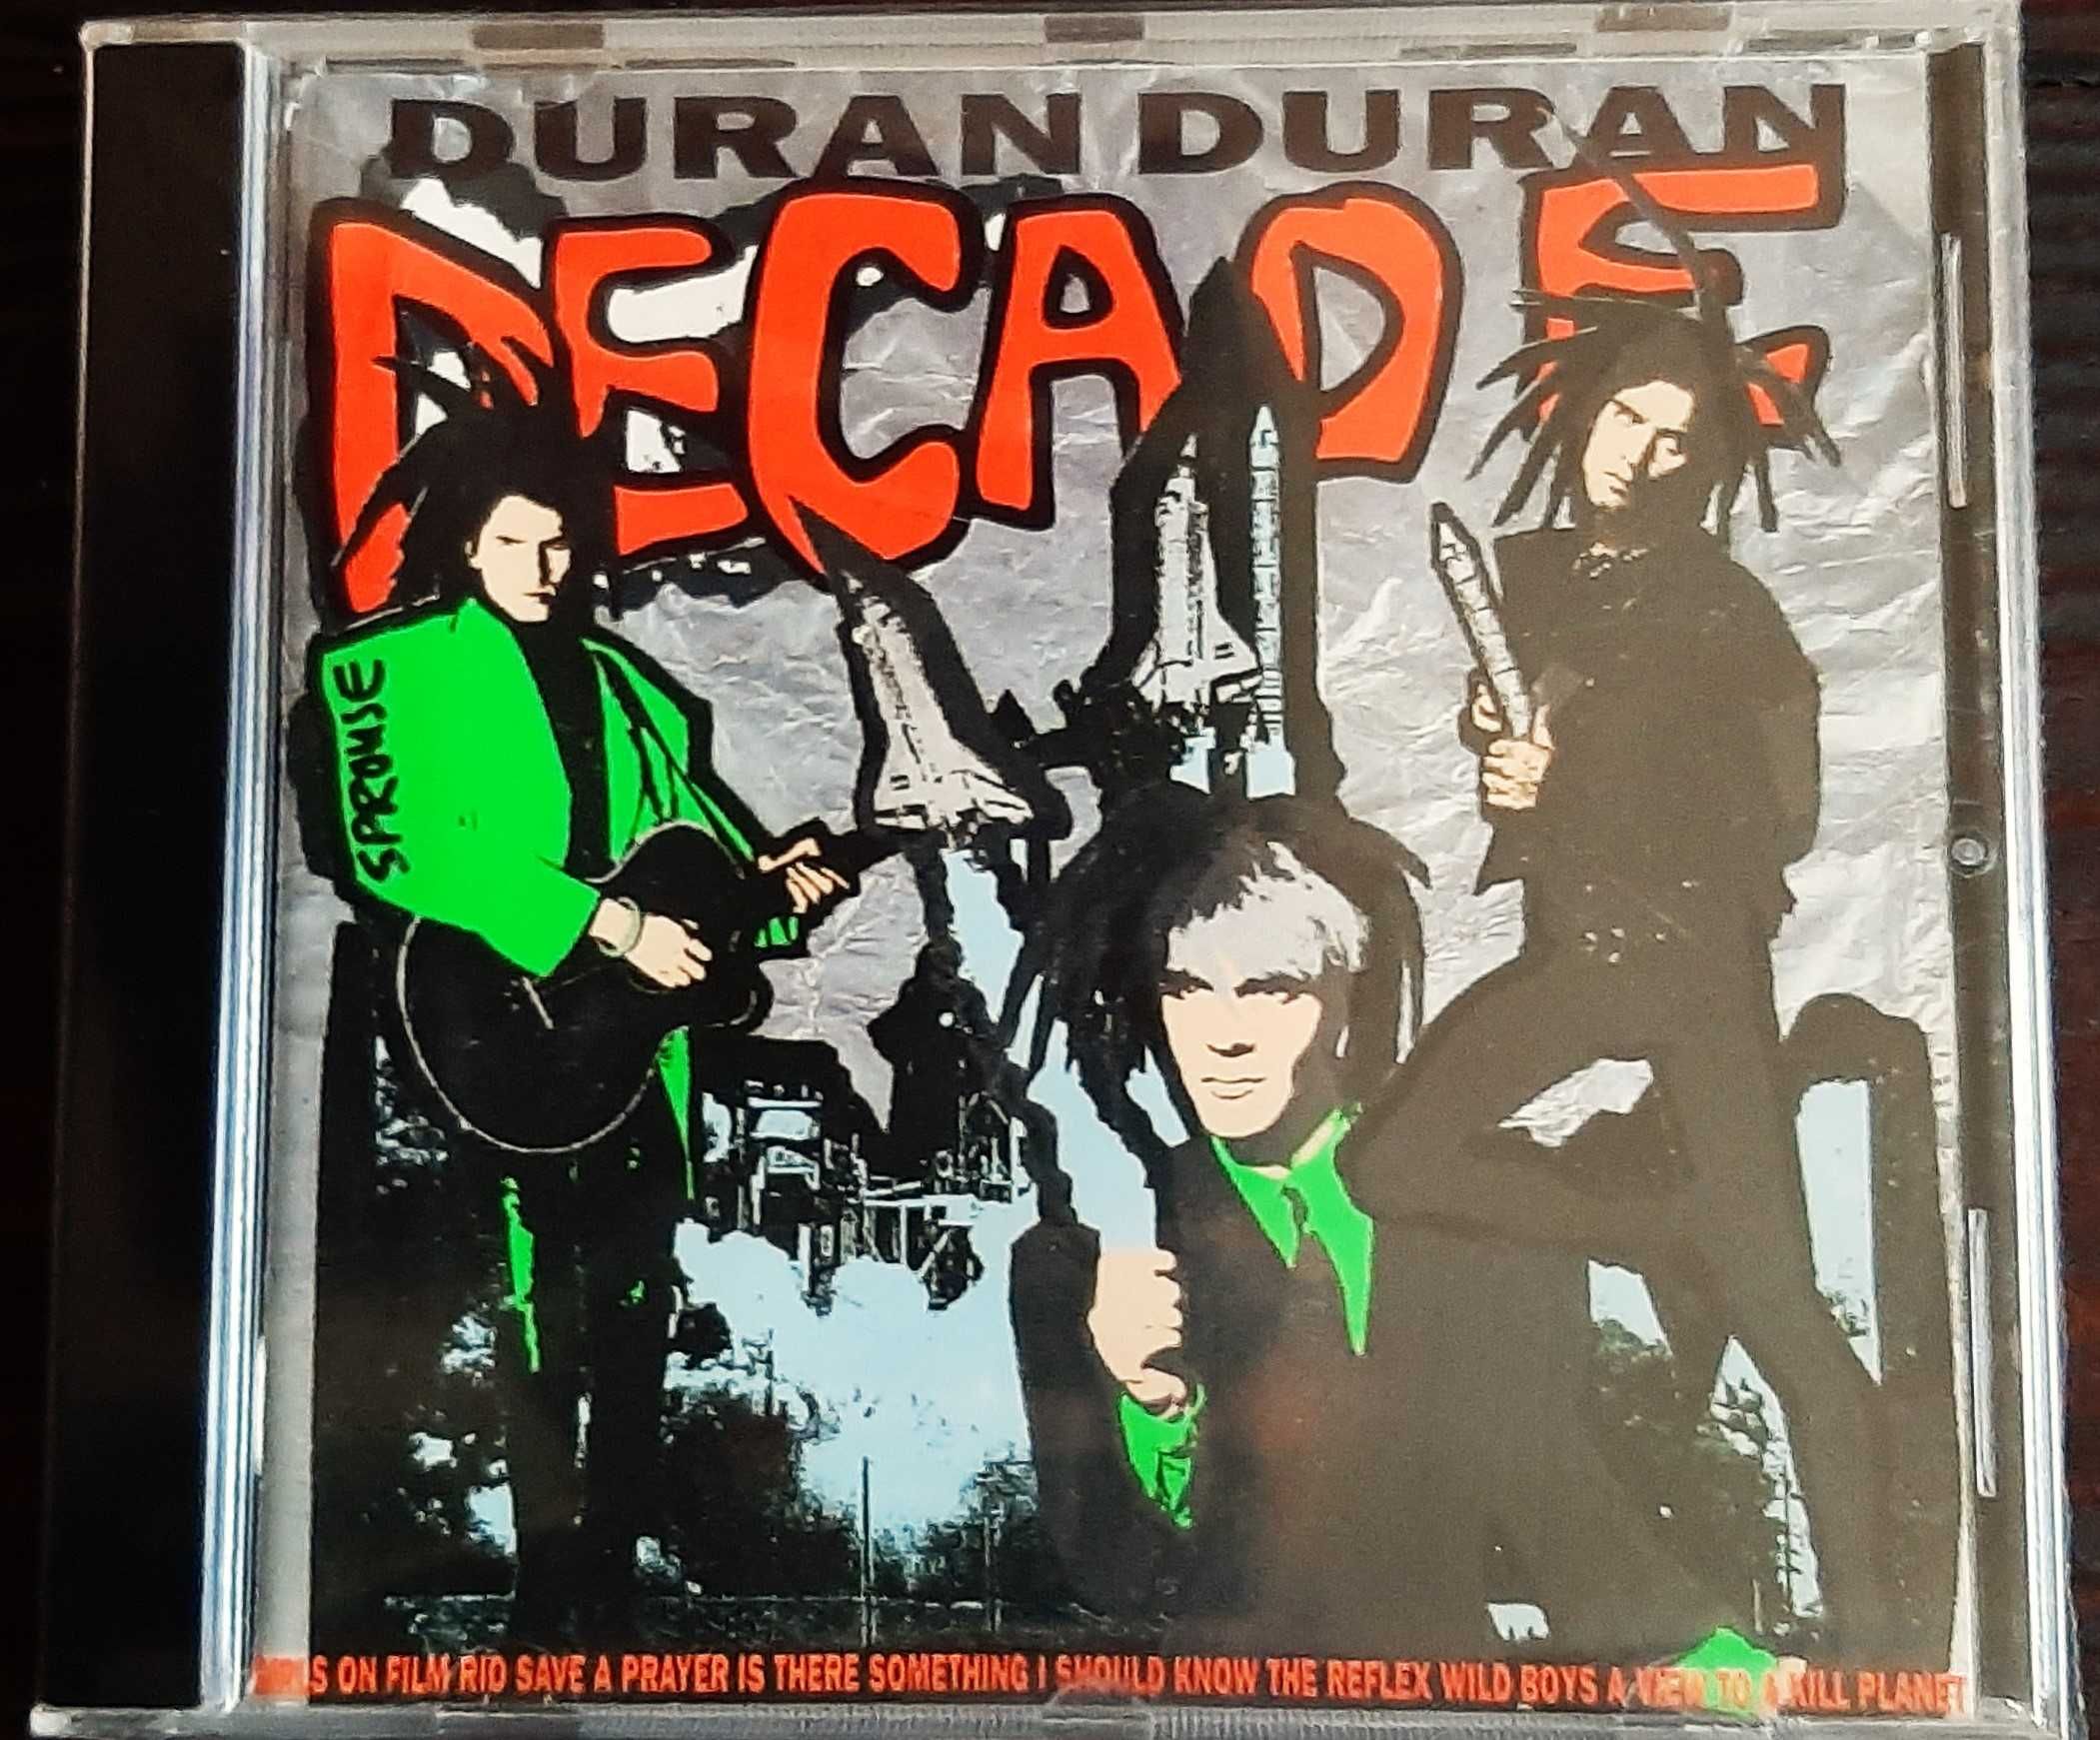 Polecam Wspaniały Album CD  DURAN DURAN - Album - Decade CD